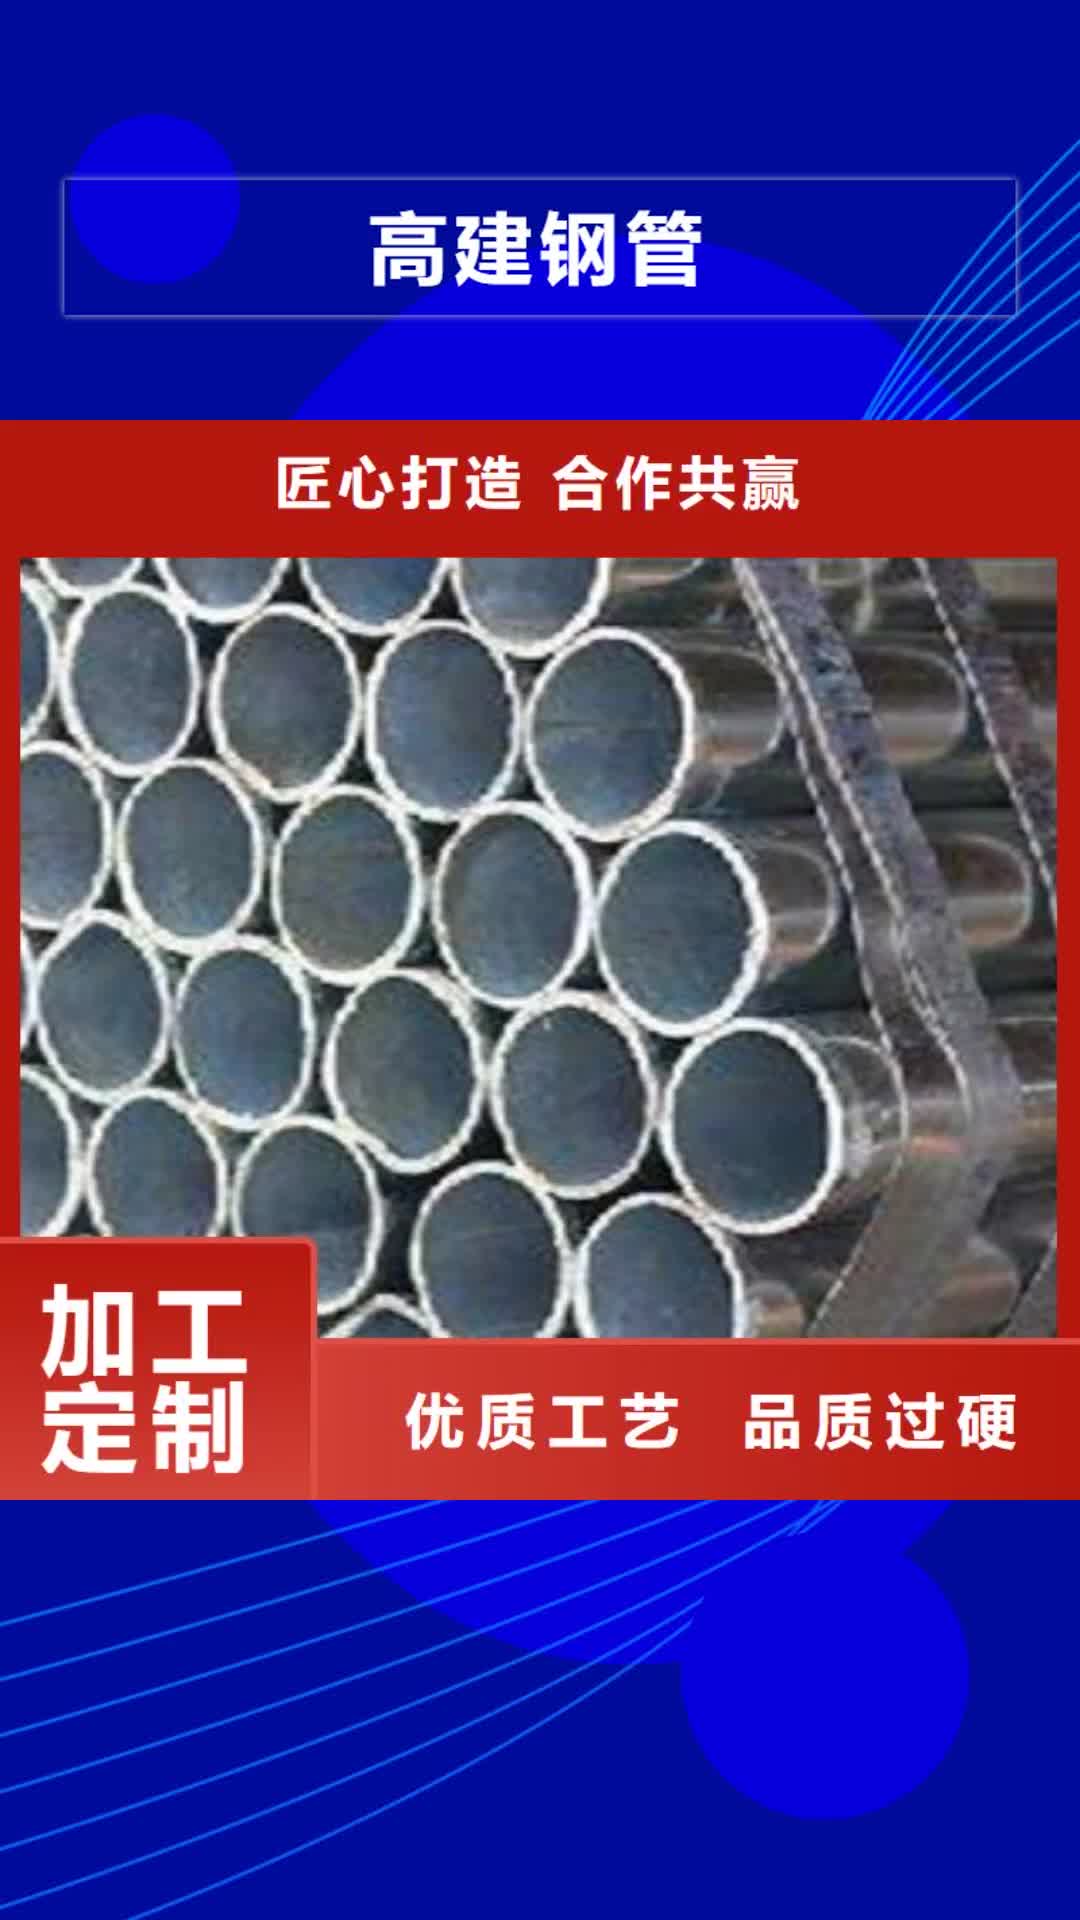 湖南 高建钢管 【压力容器板】一站式采购商家